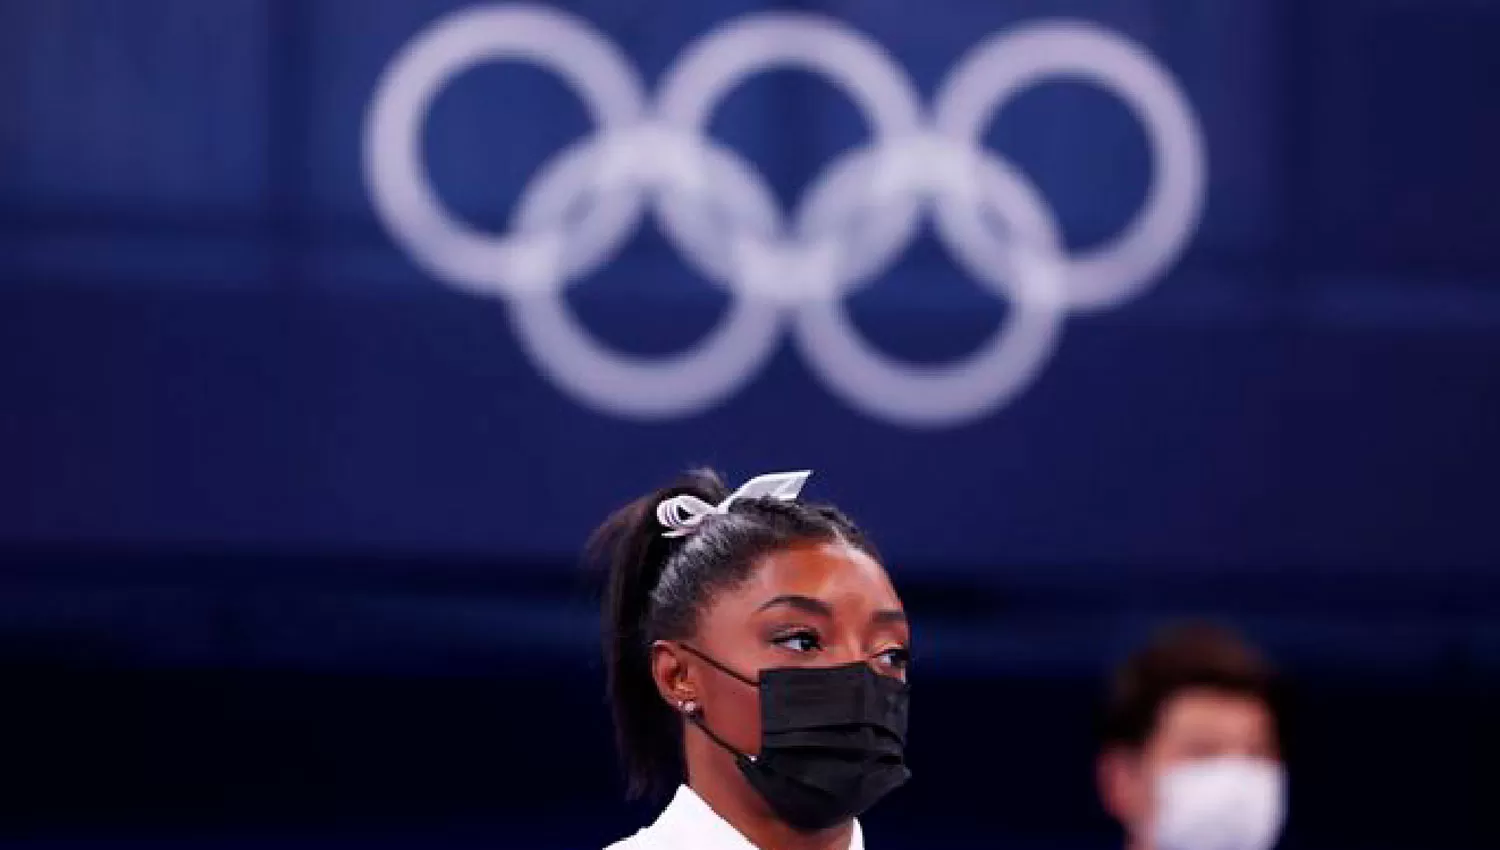 POR MÁS GLORIA. Biles ganó cuatro medallas en Río 2016 y sueña con coronar los Juegos de Tokio 2020 en el podio.